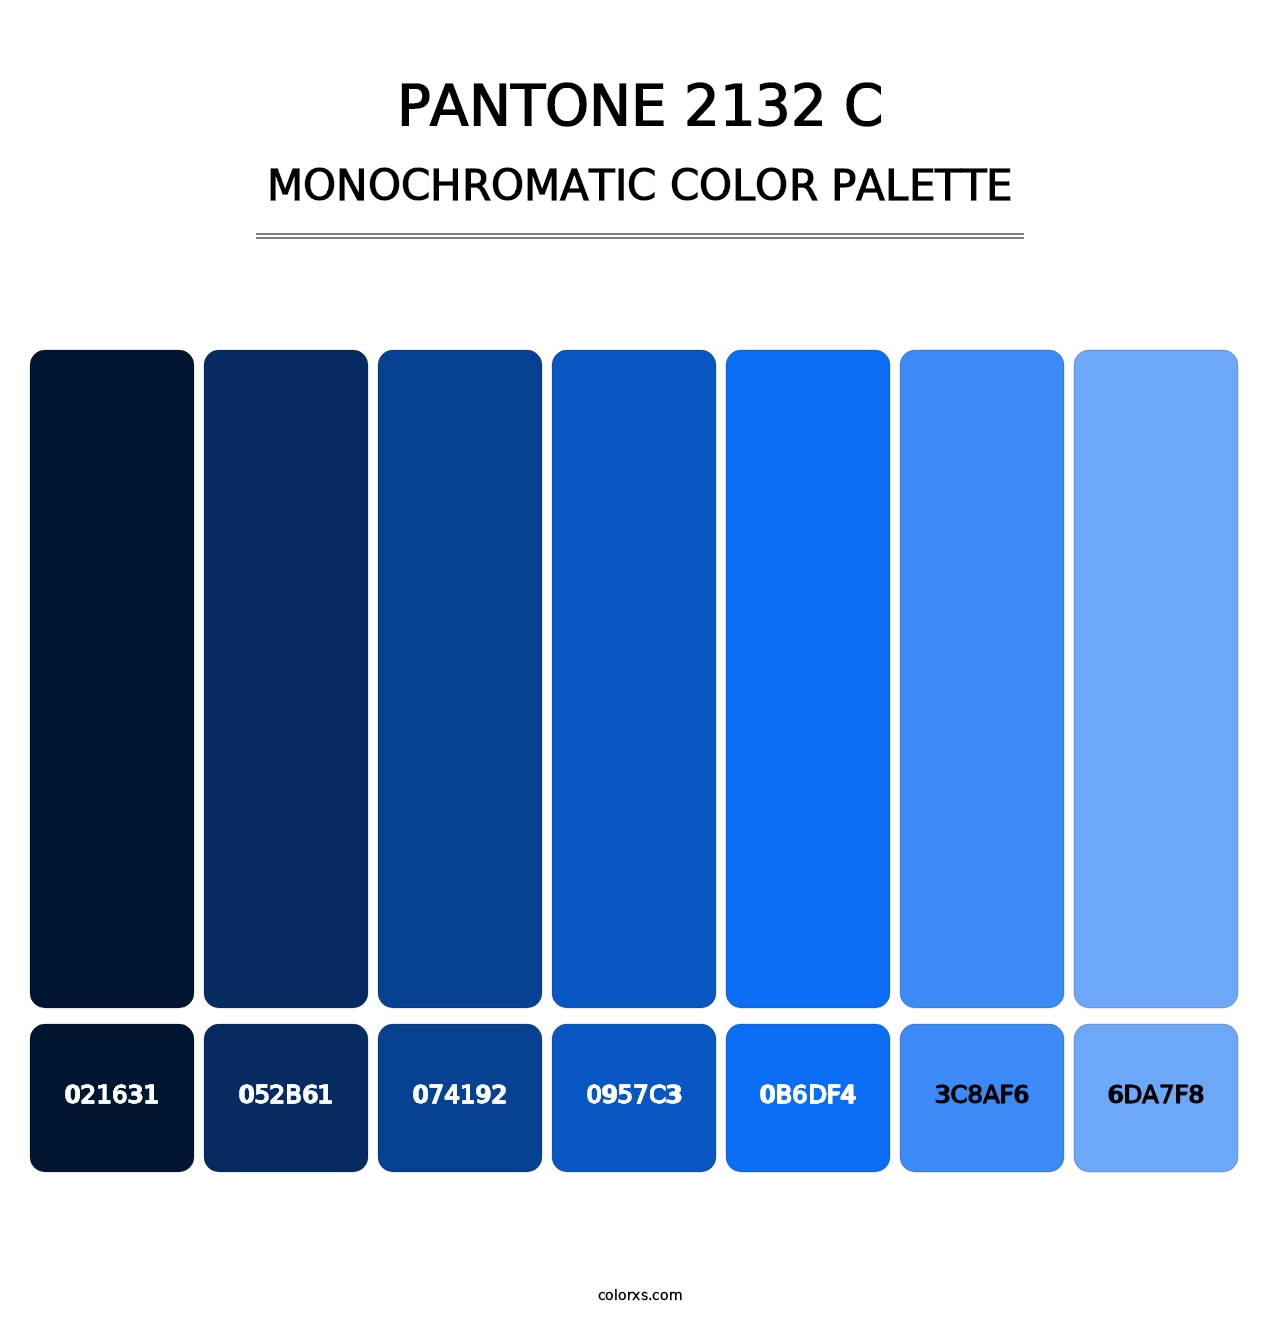 PANTONE 2132 C - Monochromatic Color Palette